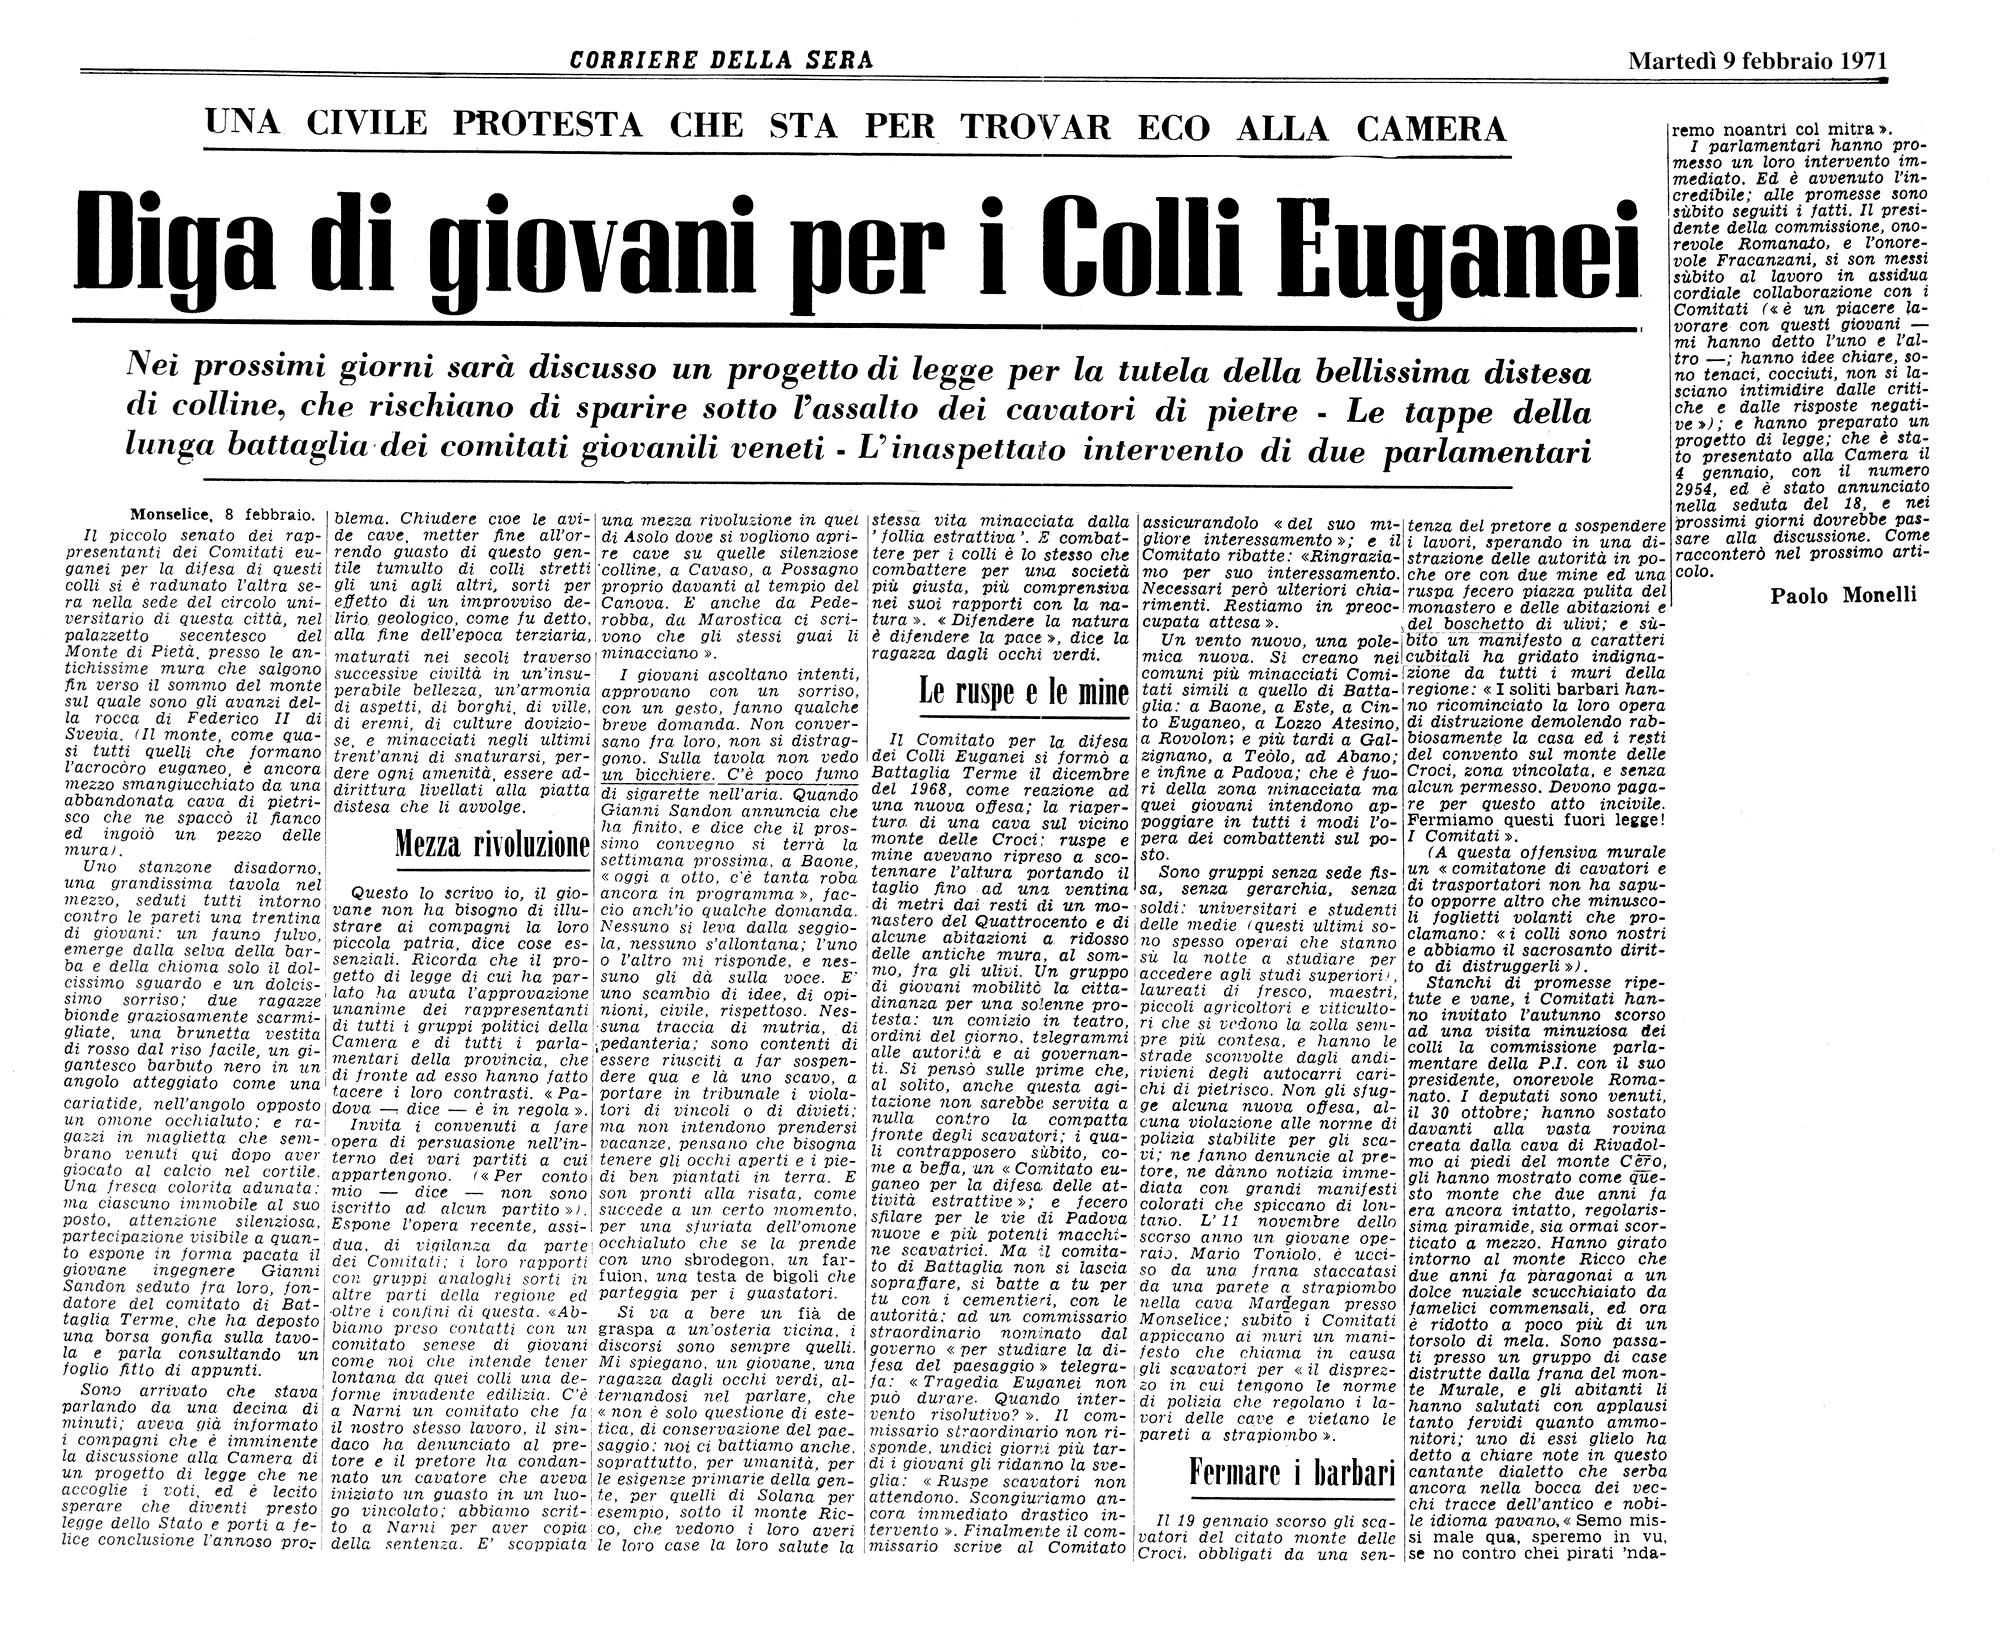 Diga di giovani per i Colli Euganei. Articolo del 9 febbraio 1971.